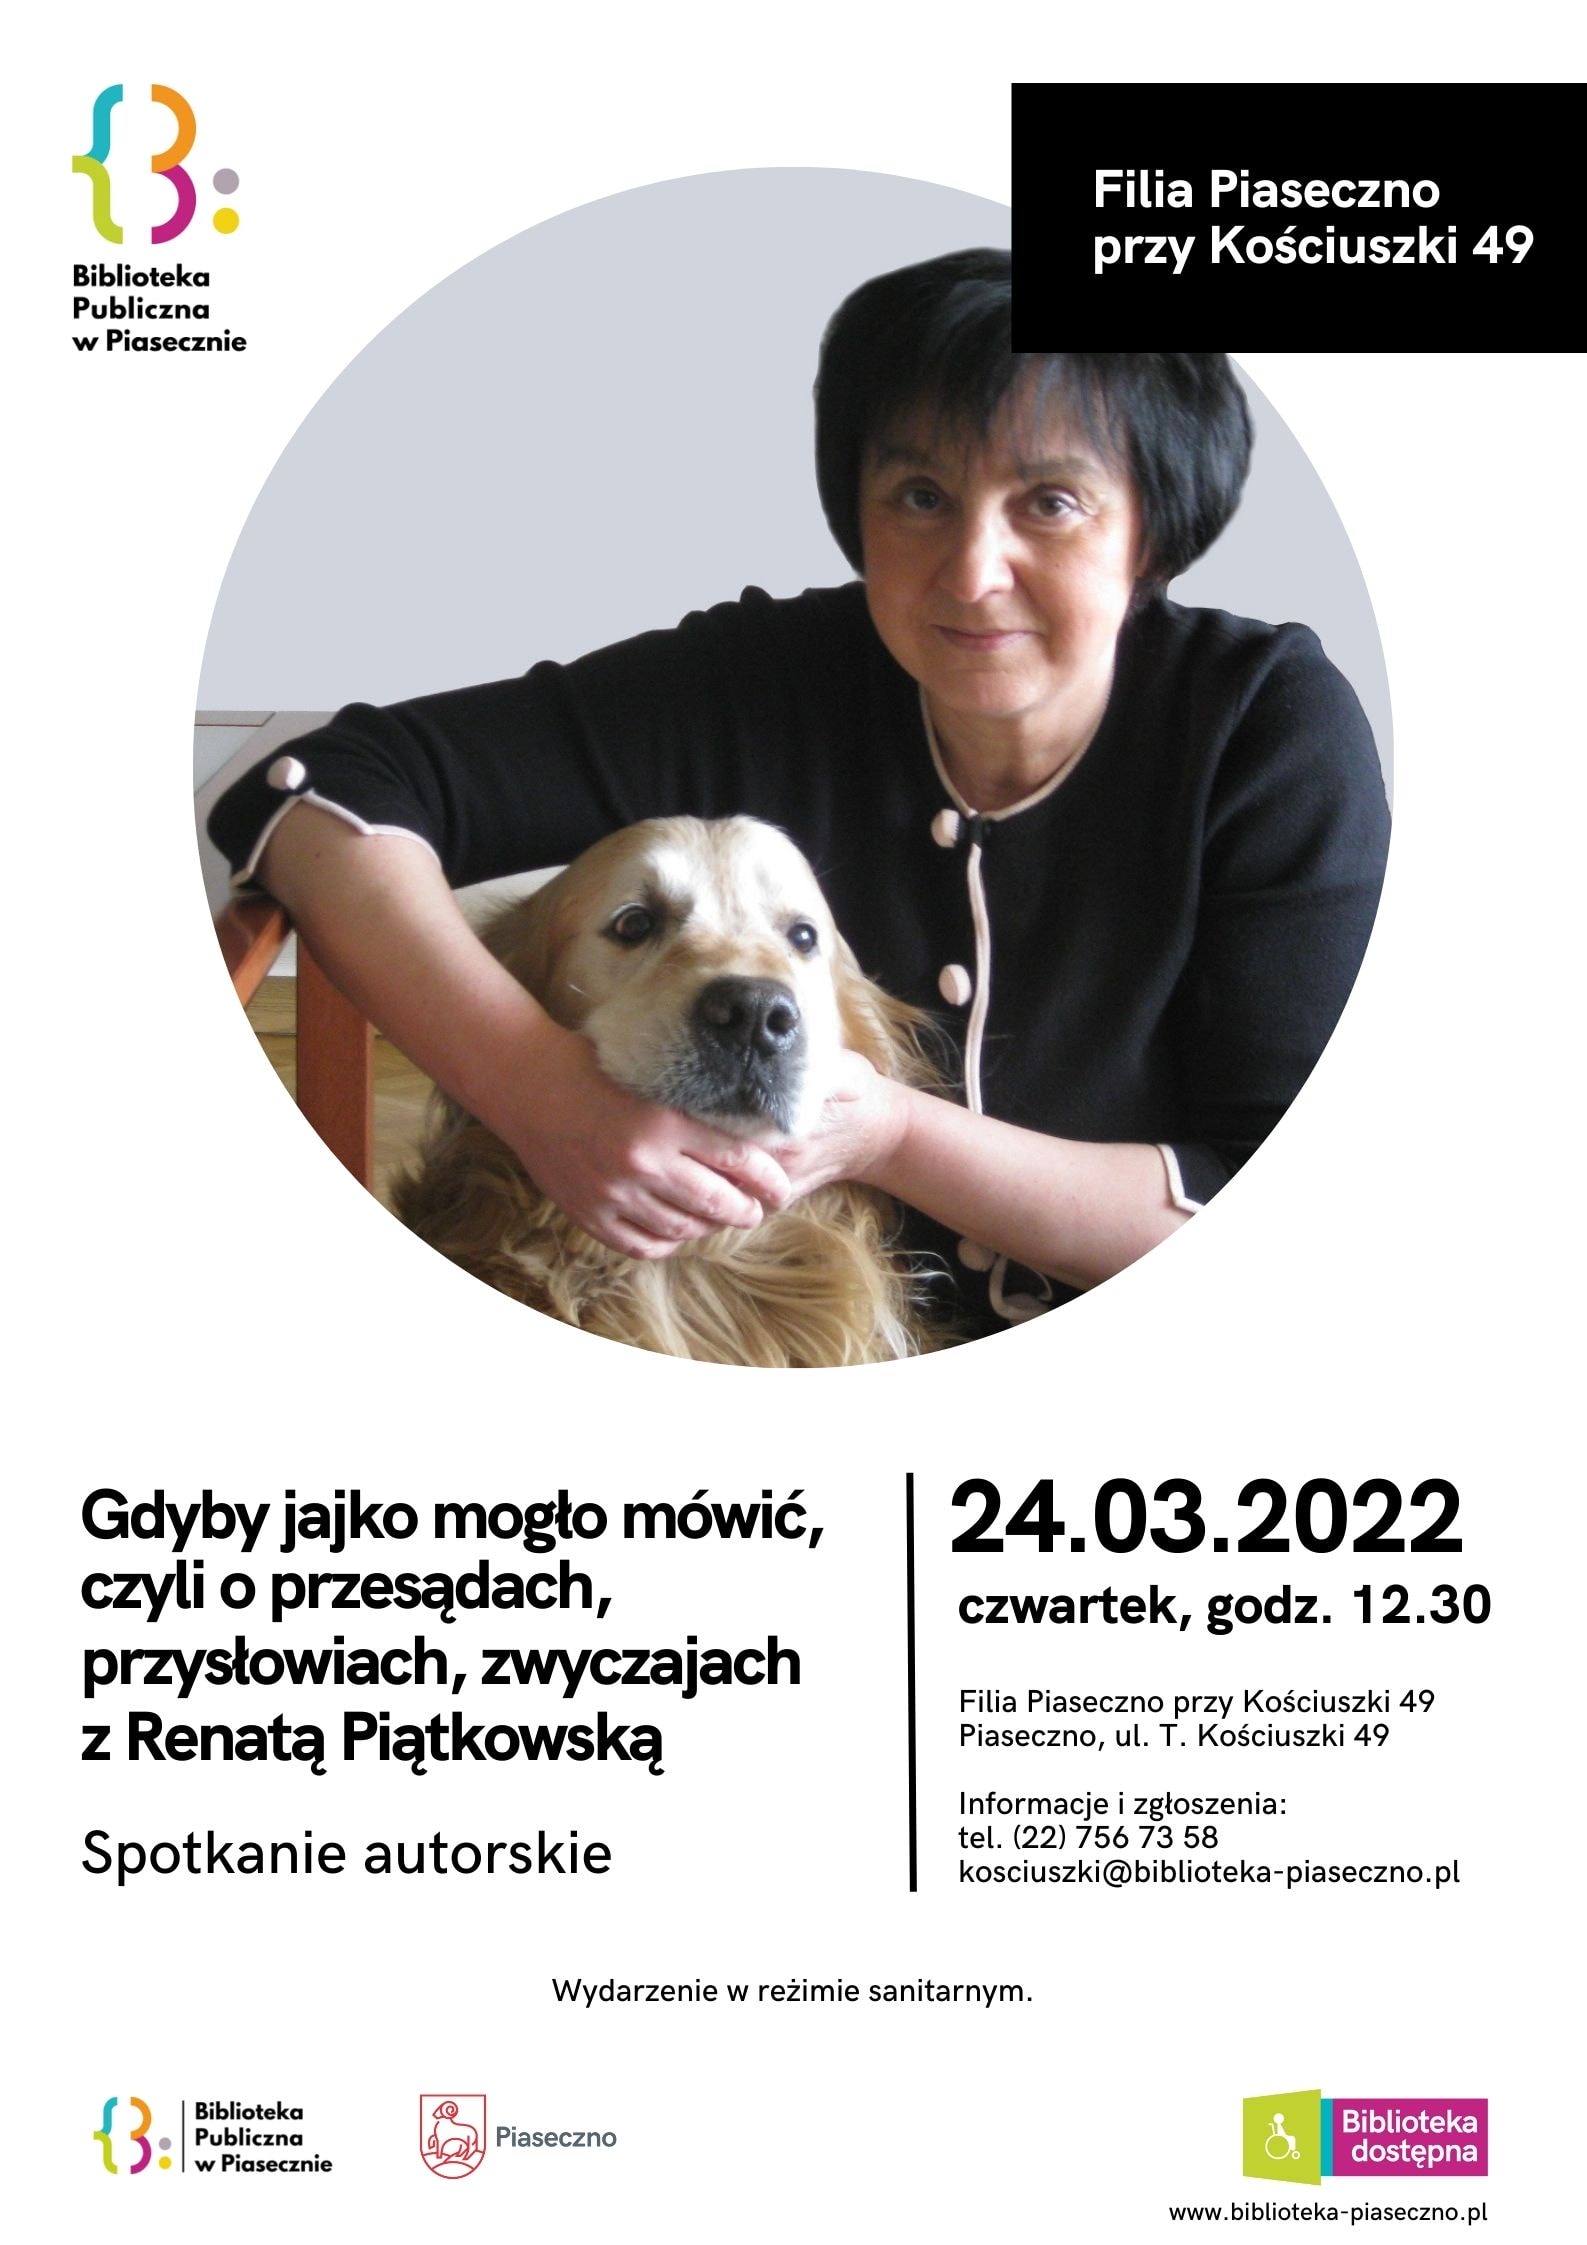 Plakat na spotkanie autorskie z Renatą Piątkowską w Filii Piaseczno przy Kościuszki 49